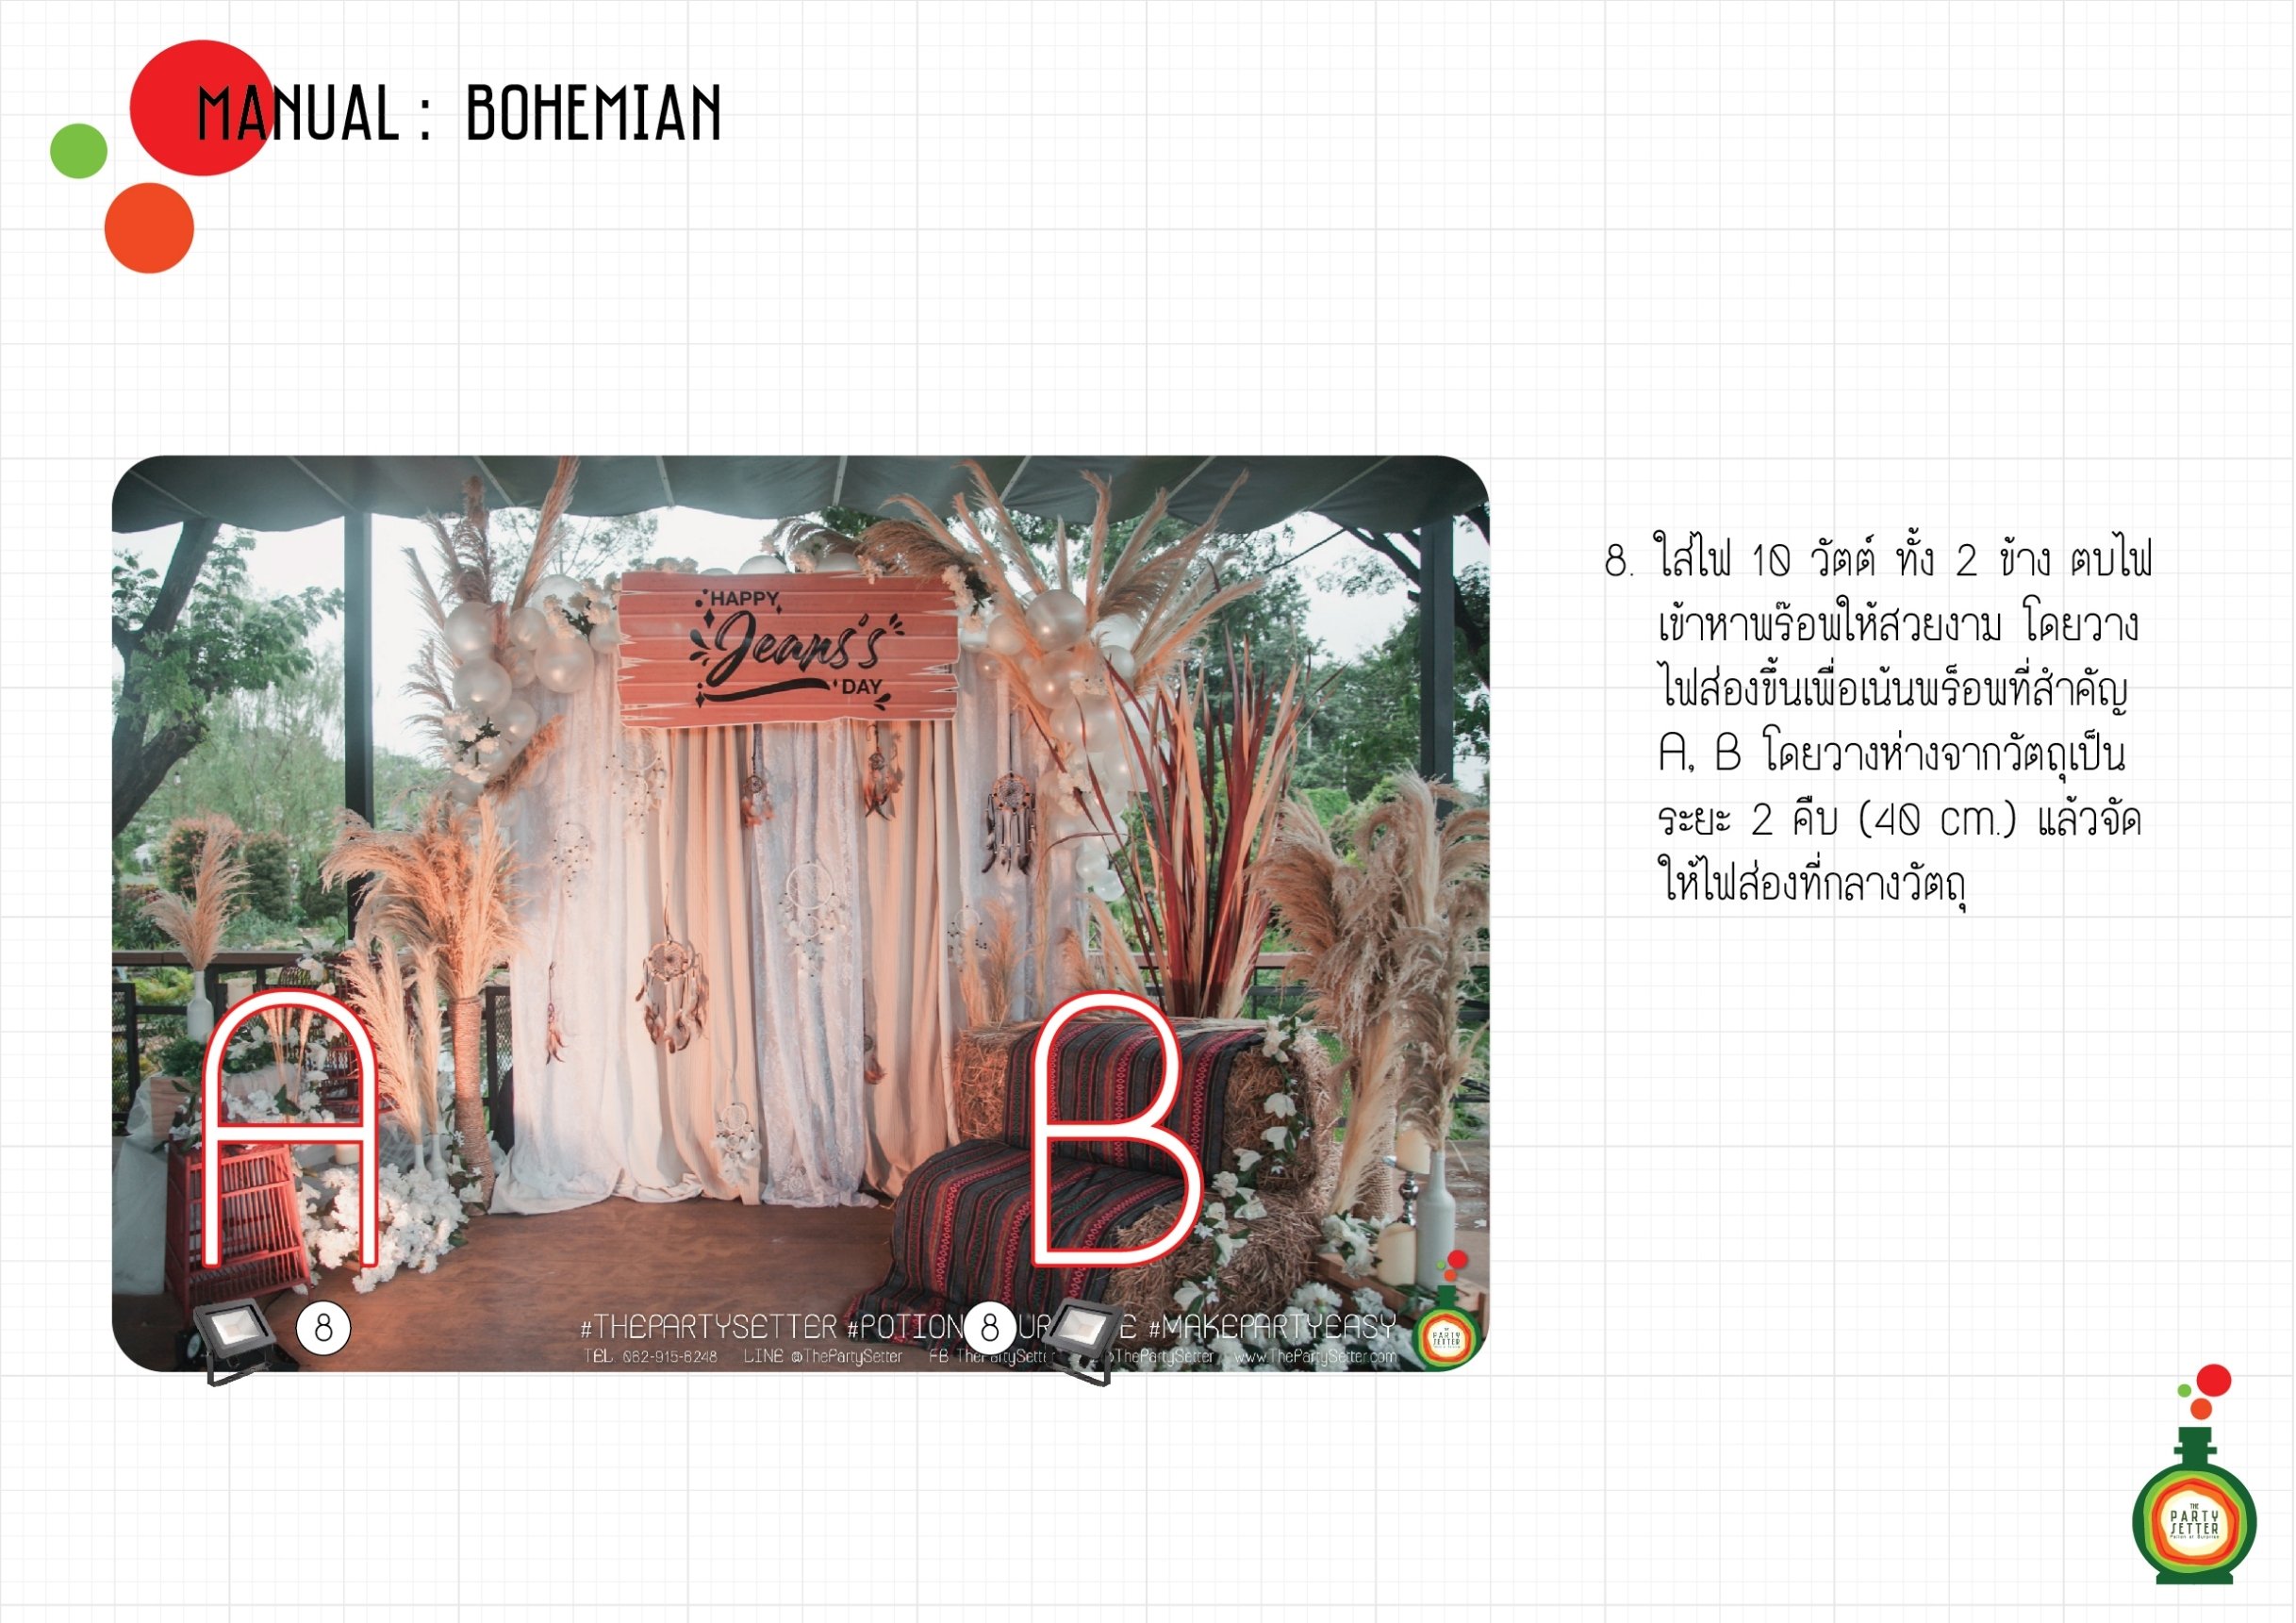 Manual_Bohemian-08-01.jpg